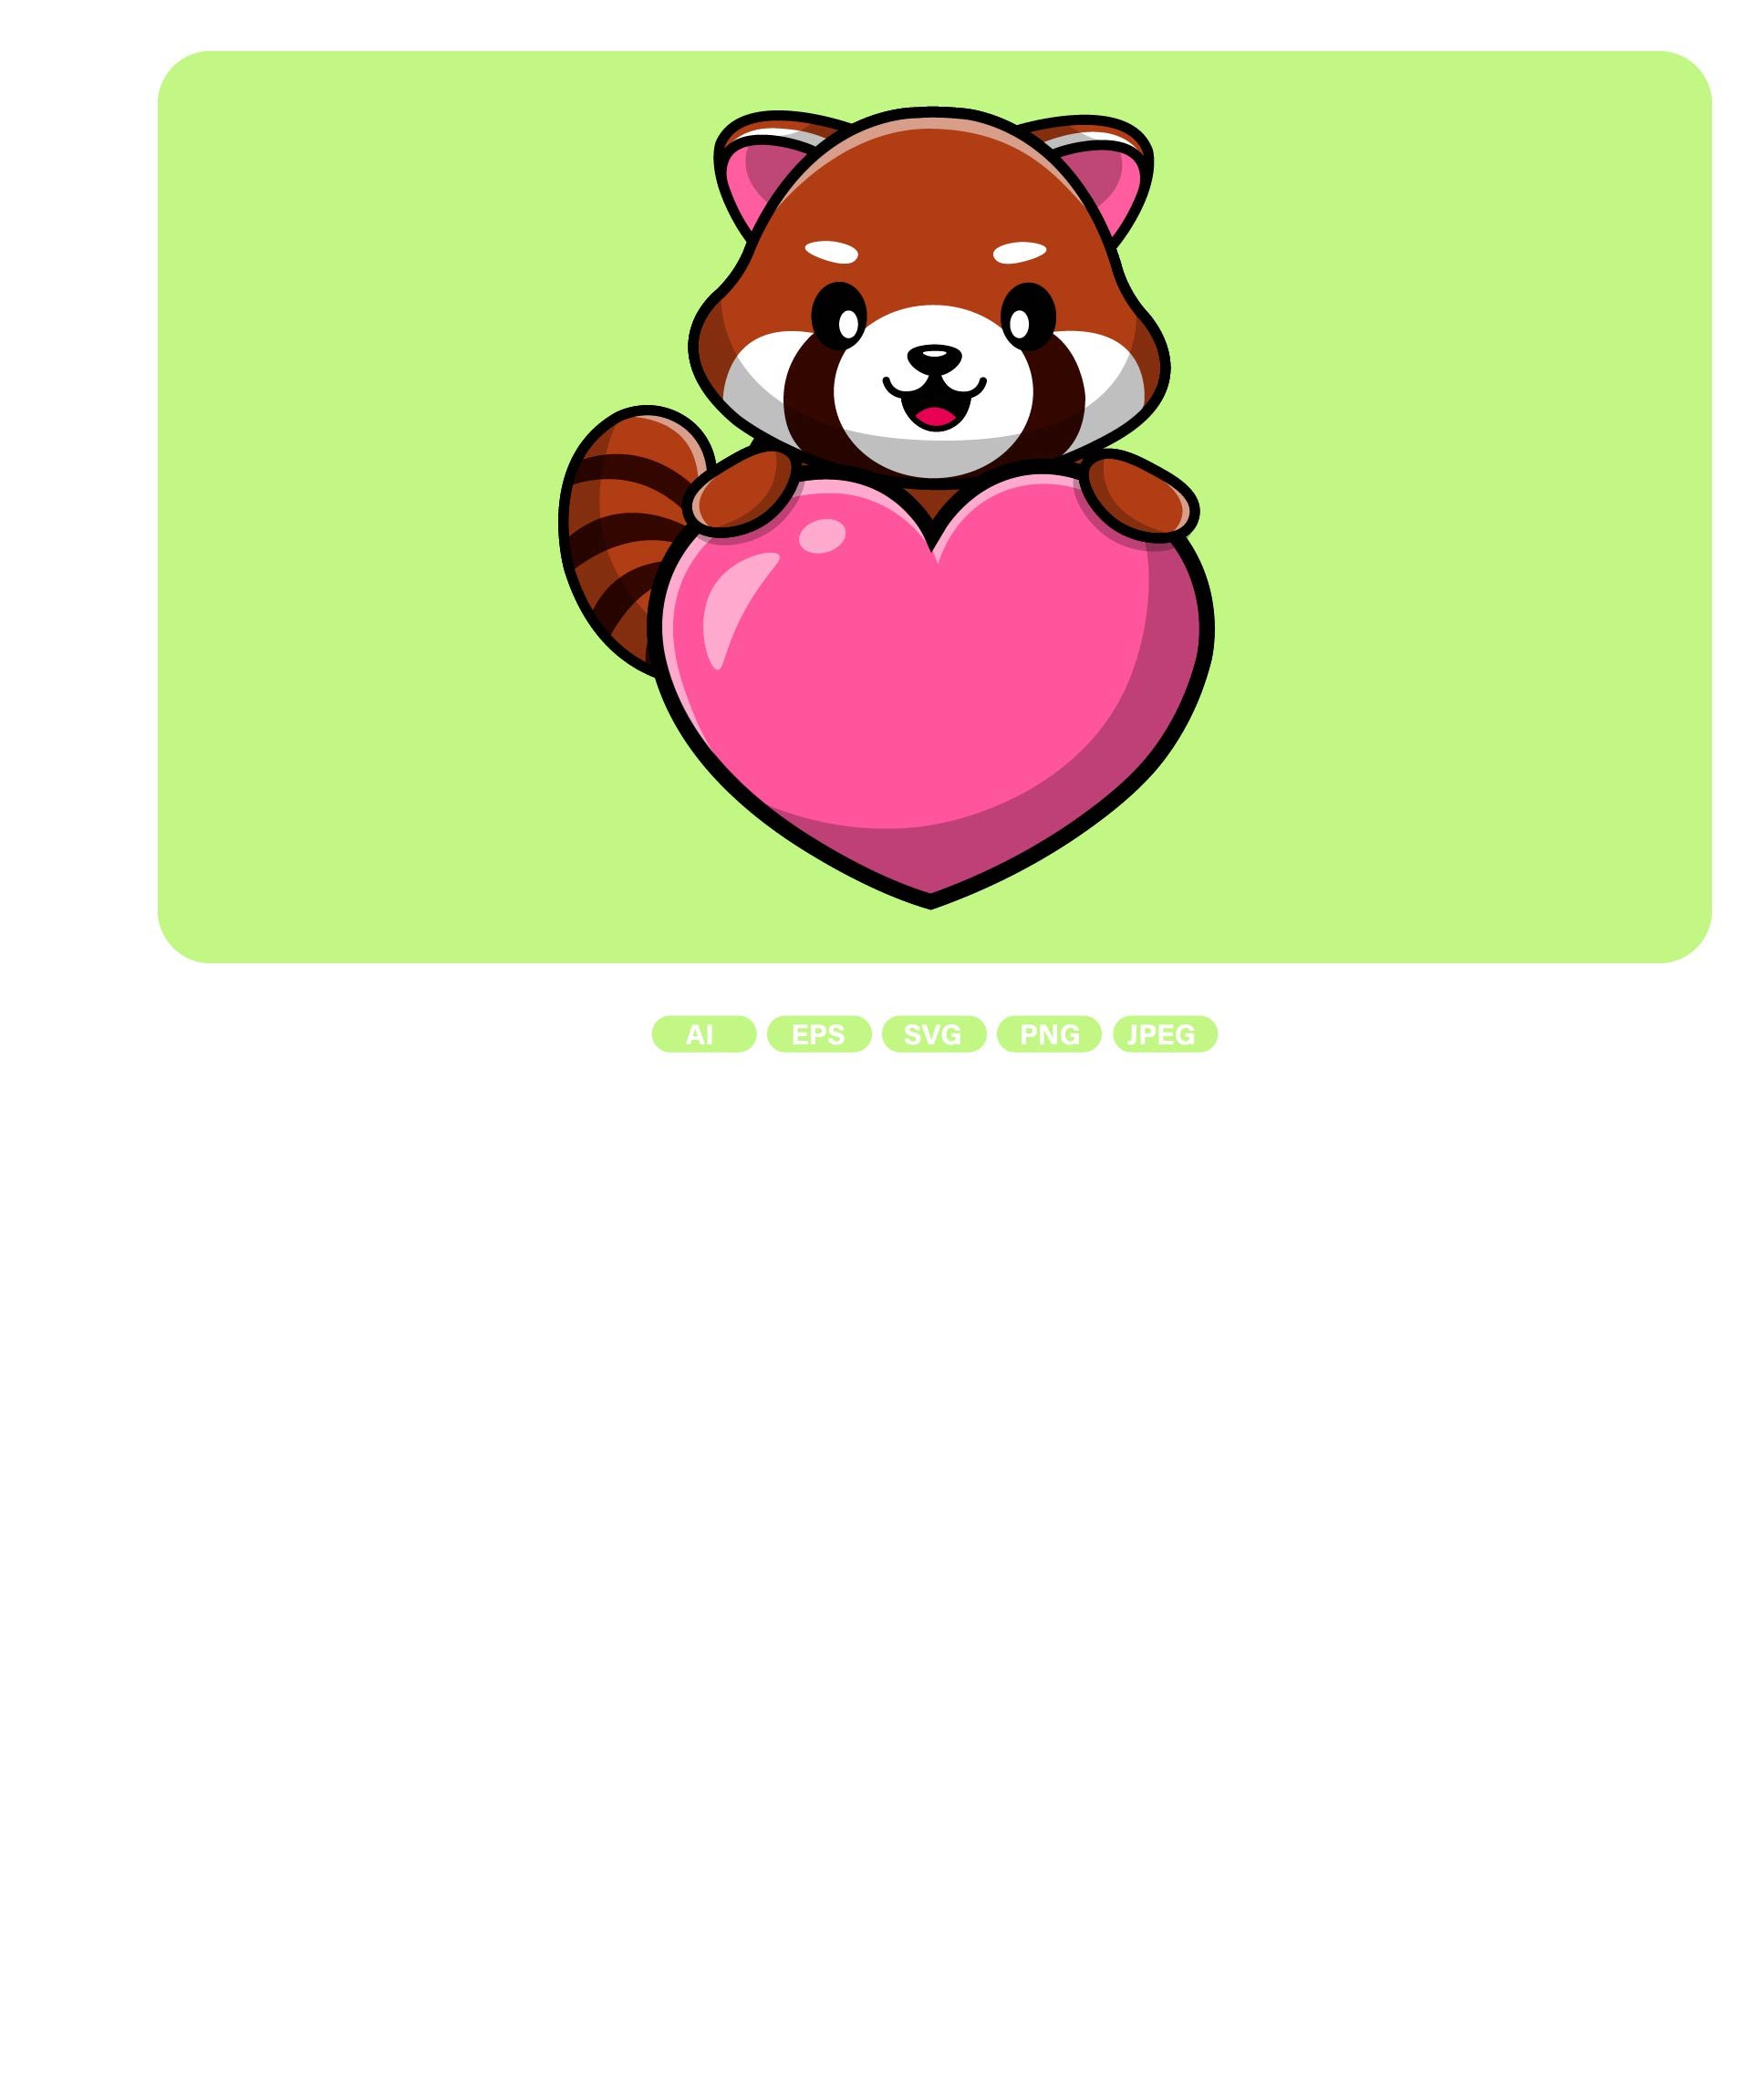 Cute Red Panda Cartoon cover image.